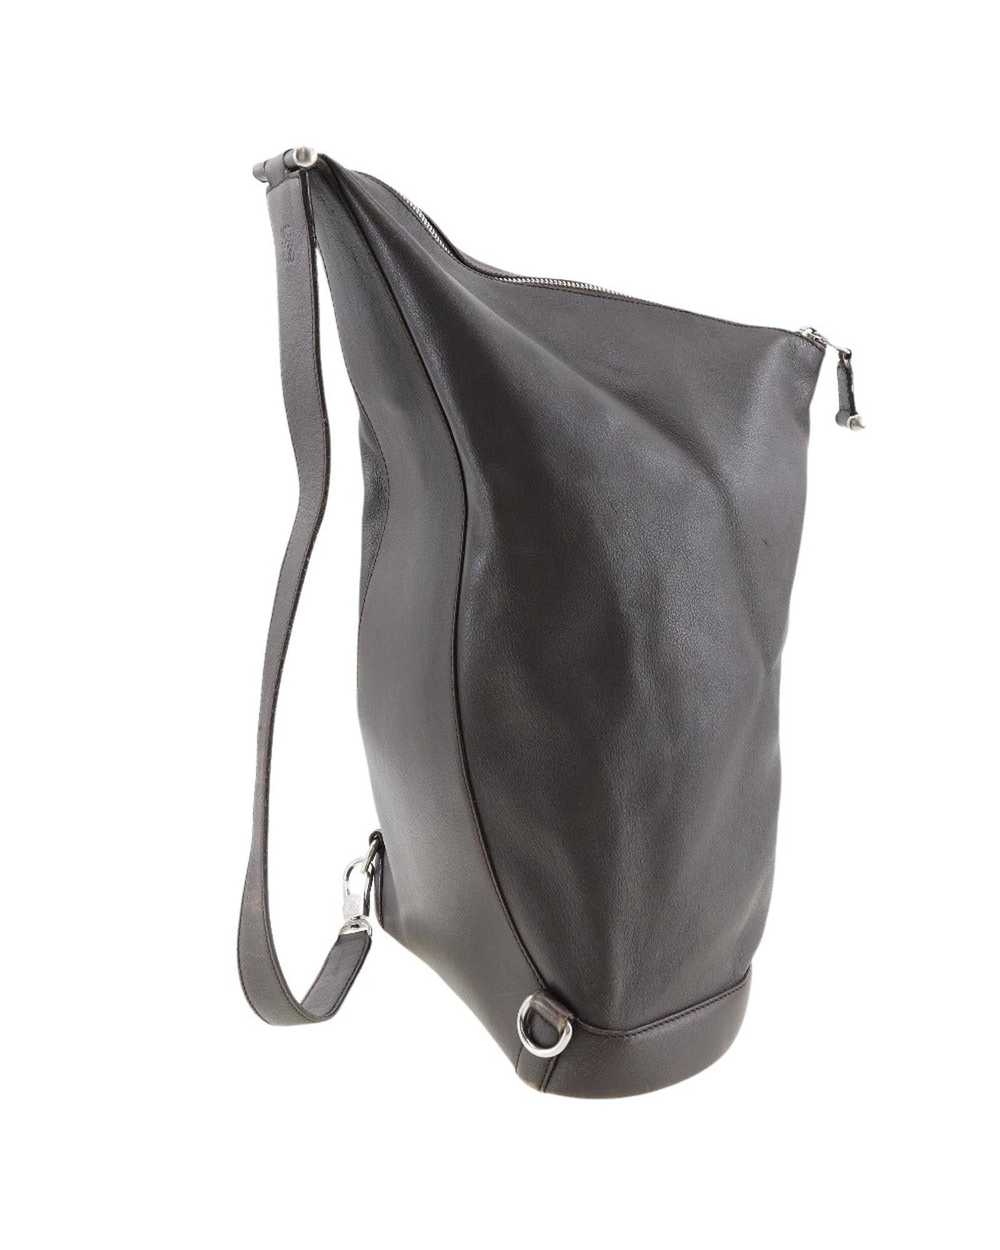 Loewe Brown Leather One-Shoulder Bag - image 3